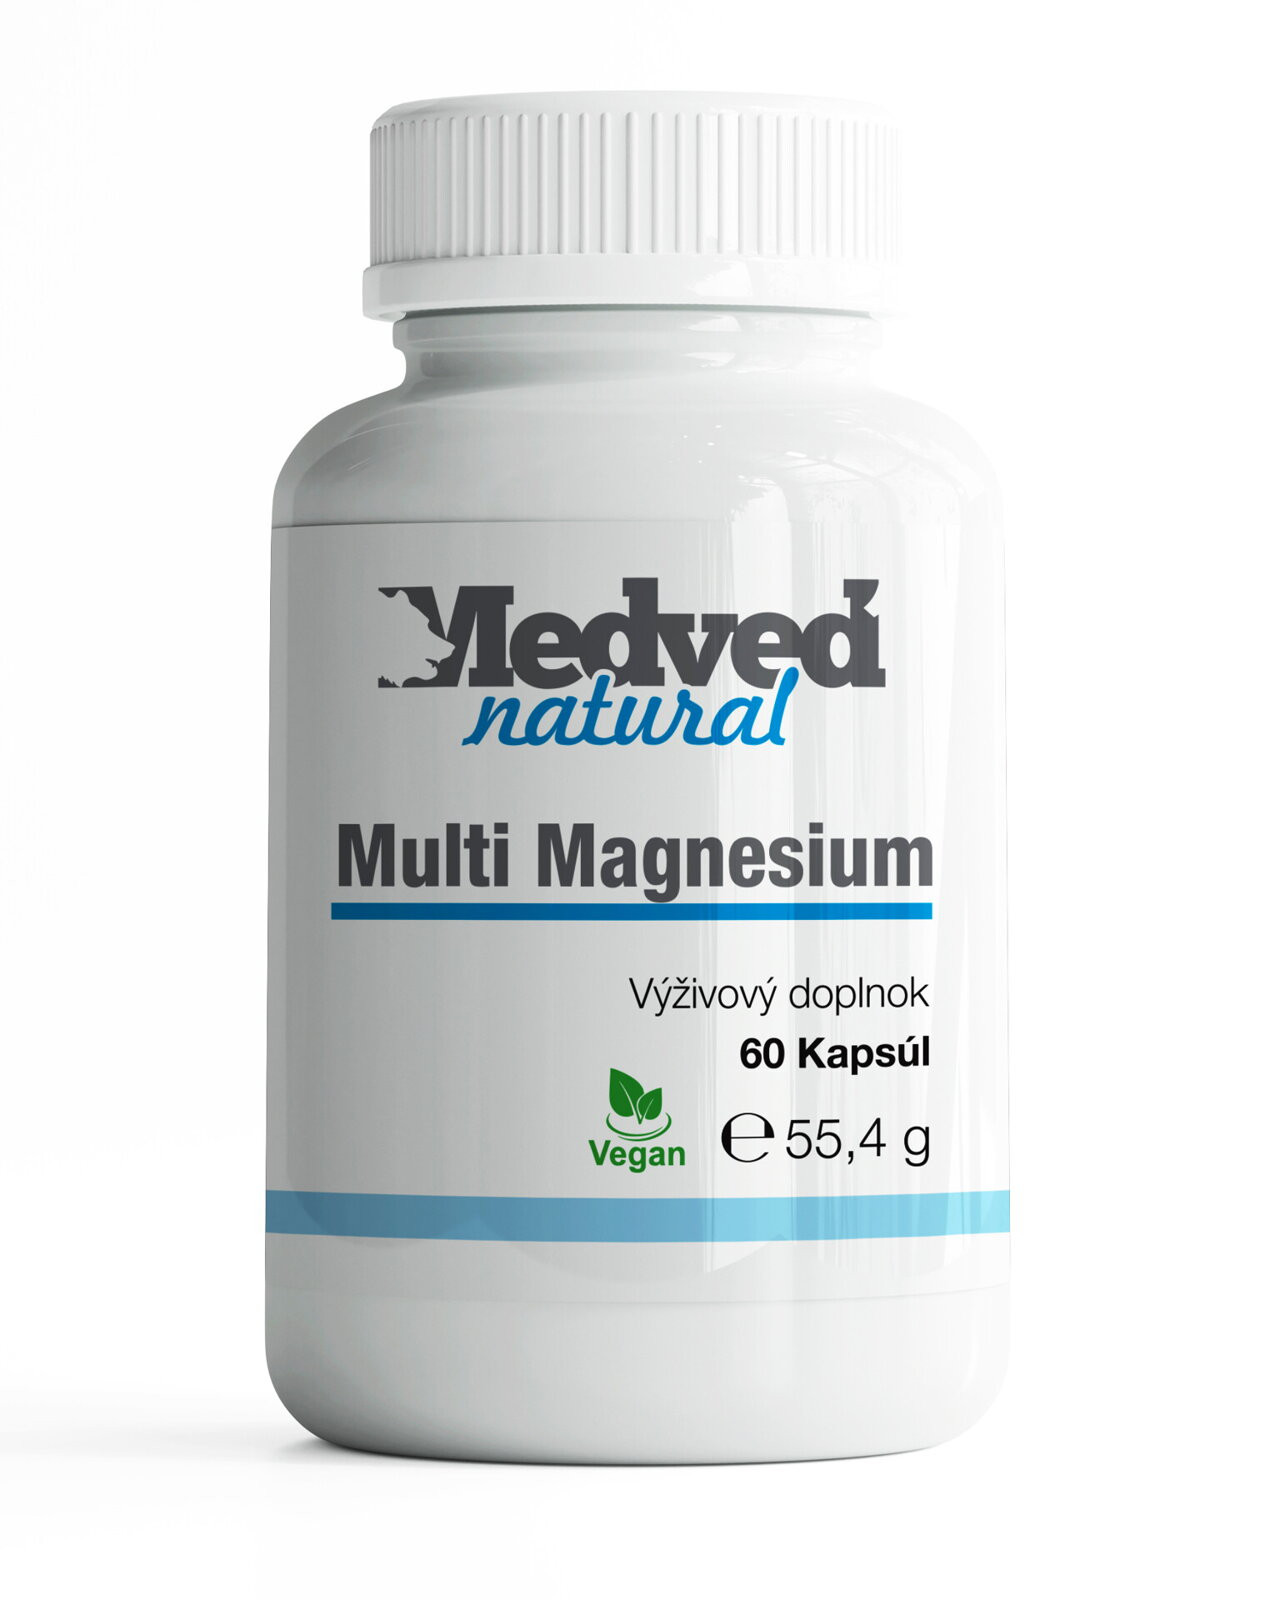 Multi Magnesium Medveď natural